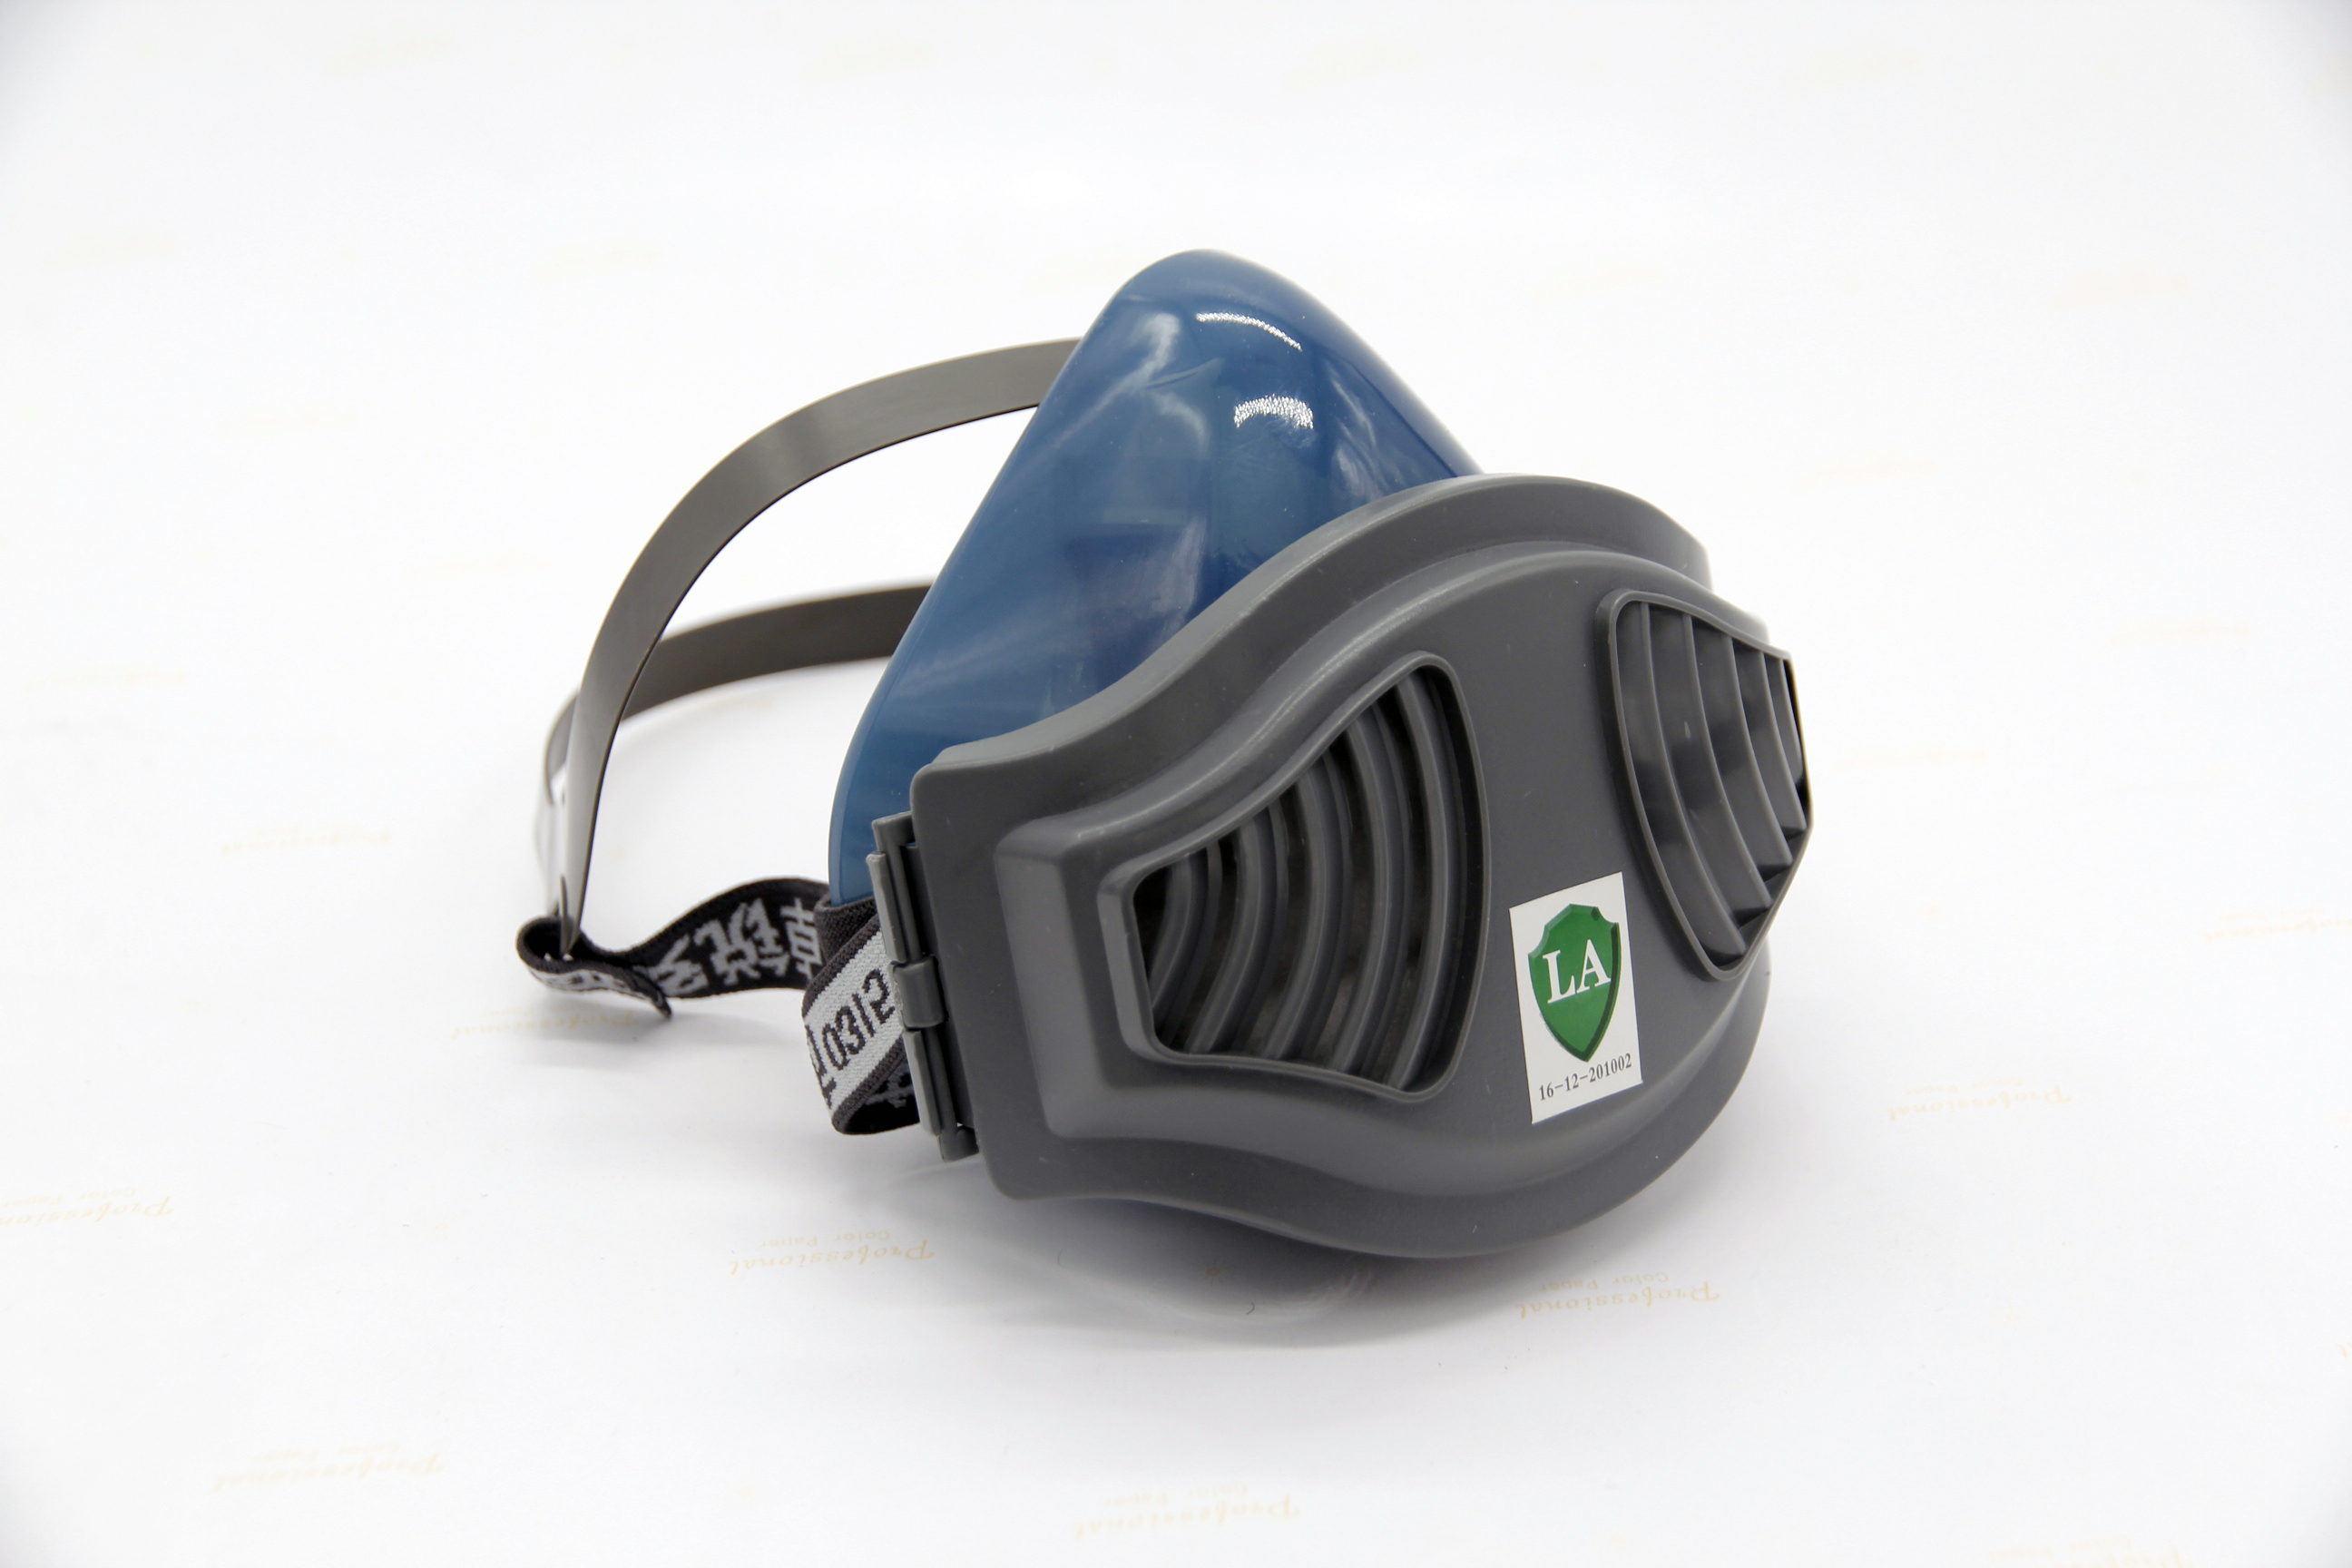 Elektriksiz Hava Temizleyici Partikül Maskesi PPE-7702